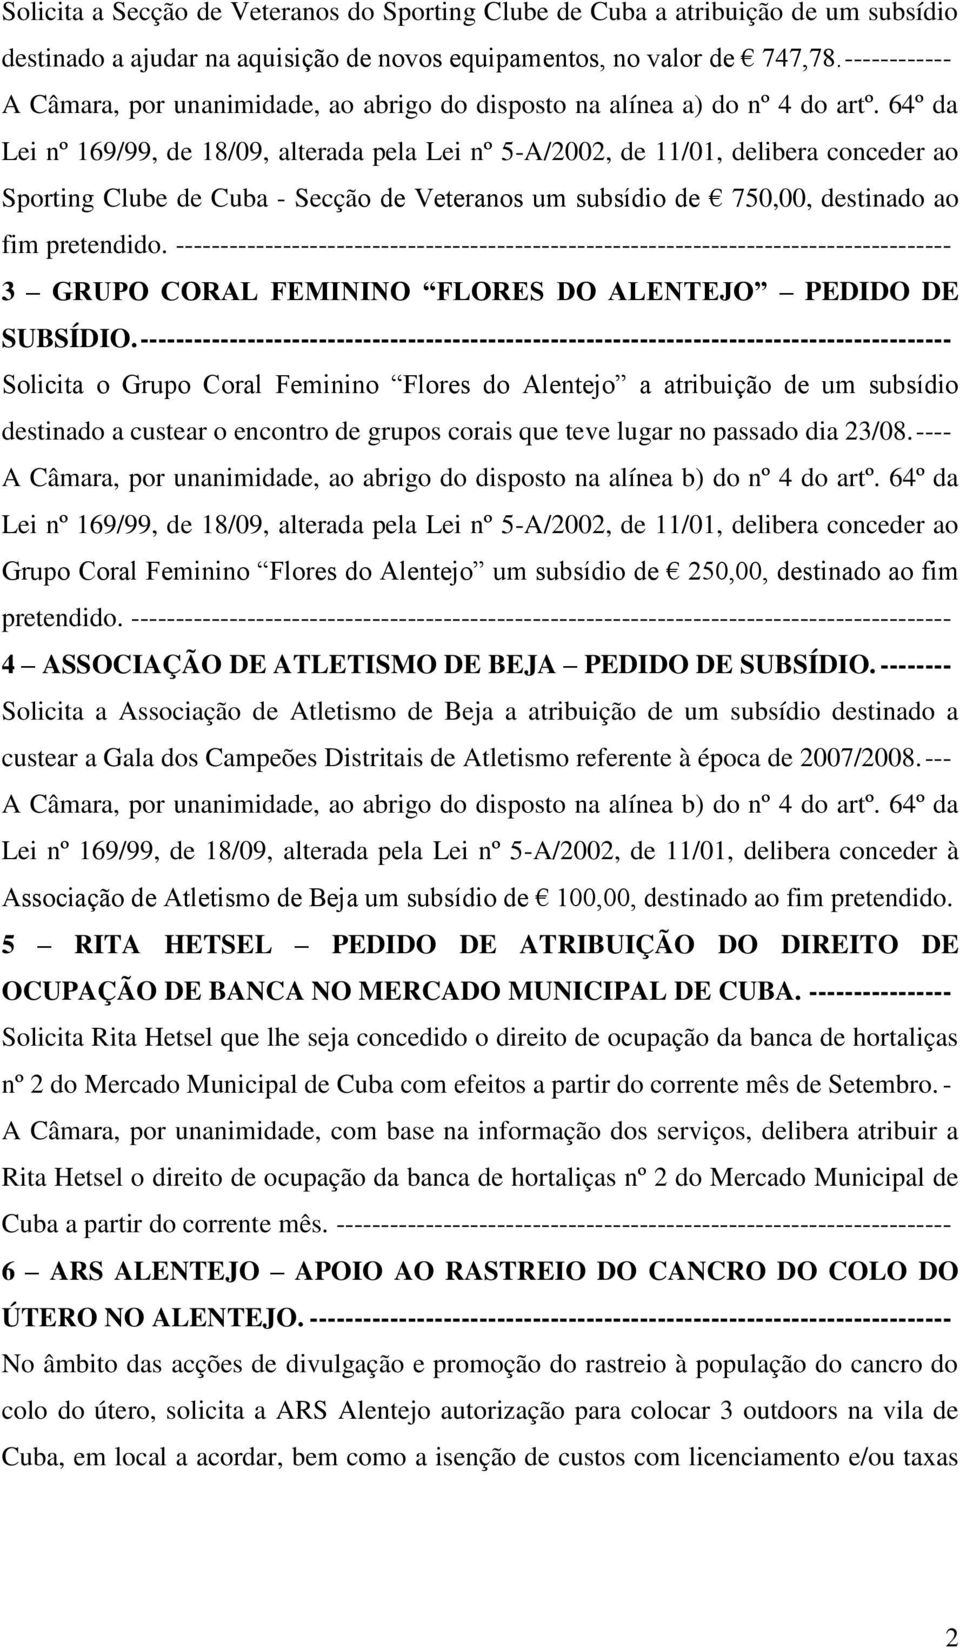 64º da Lei nº 169/99, de 18/09, alterada pela Lei nº 5-A/2002, de 11/01, delibera conceder ao Sporting Clube de Cuba - Secção de Veteranos um subsídio de 750,00, destinado ao fim pretendido.